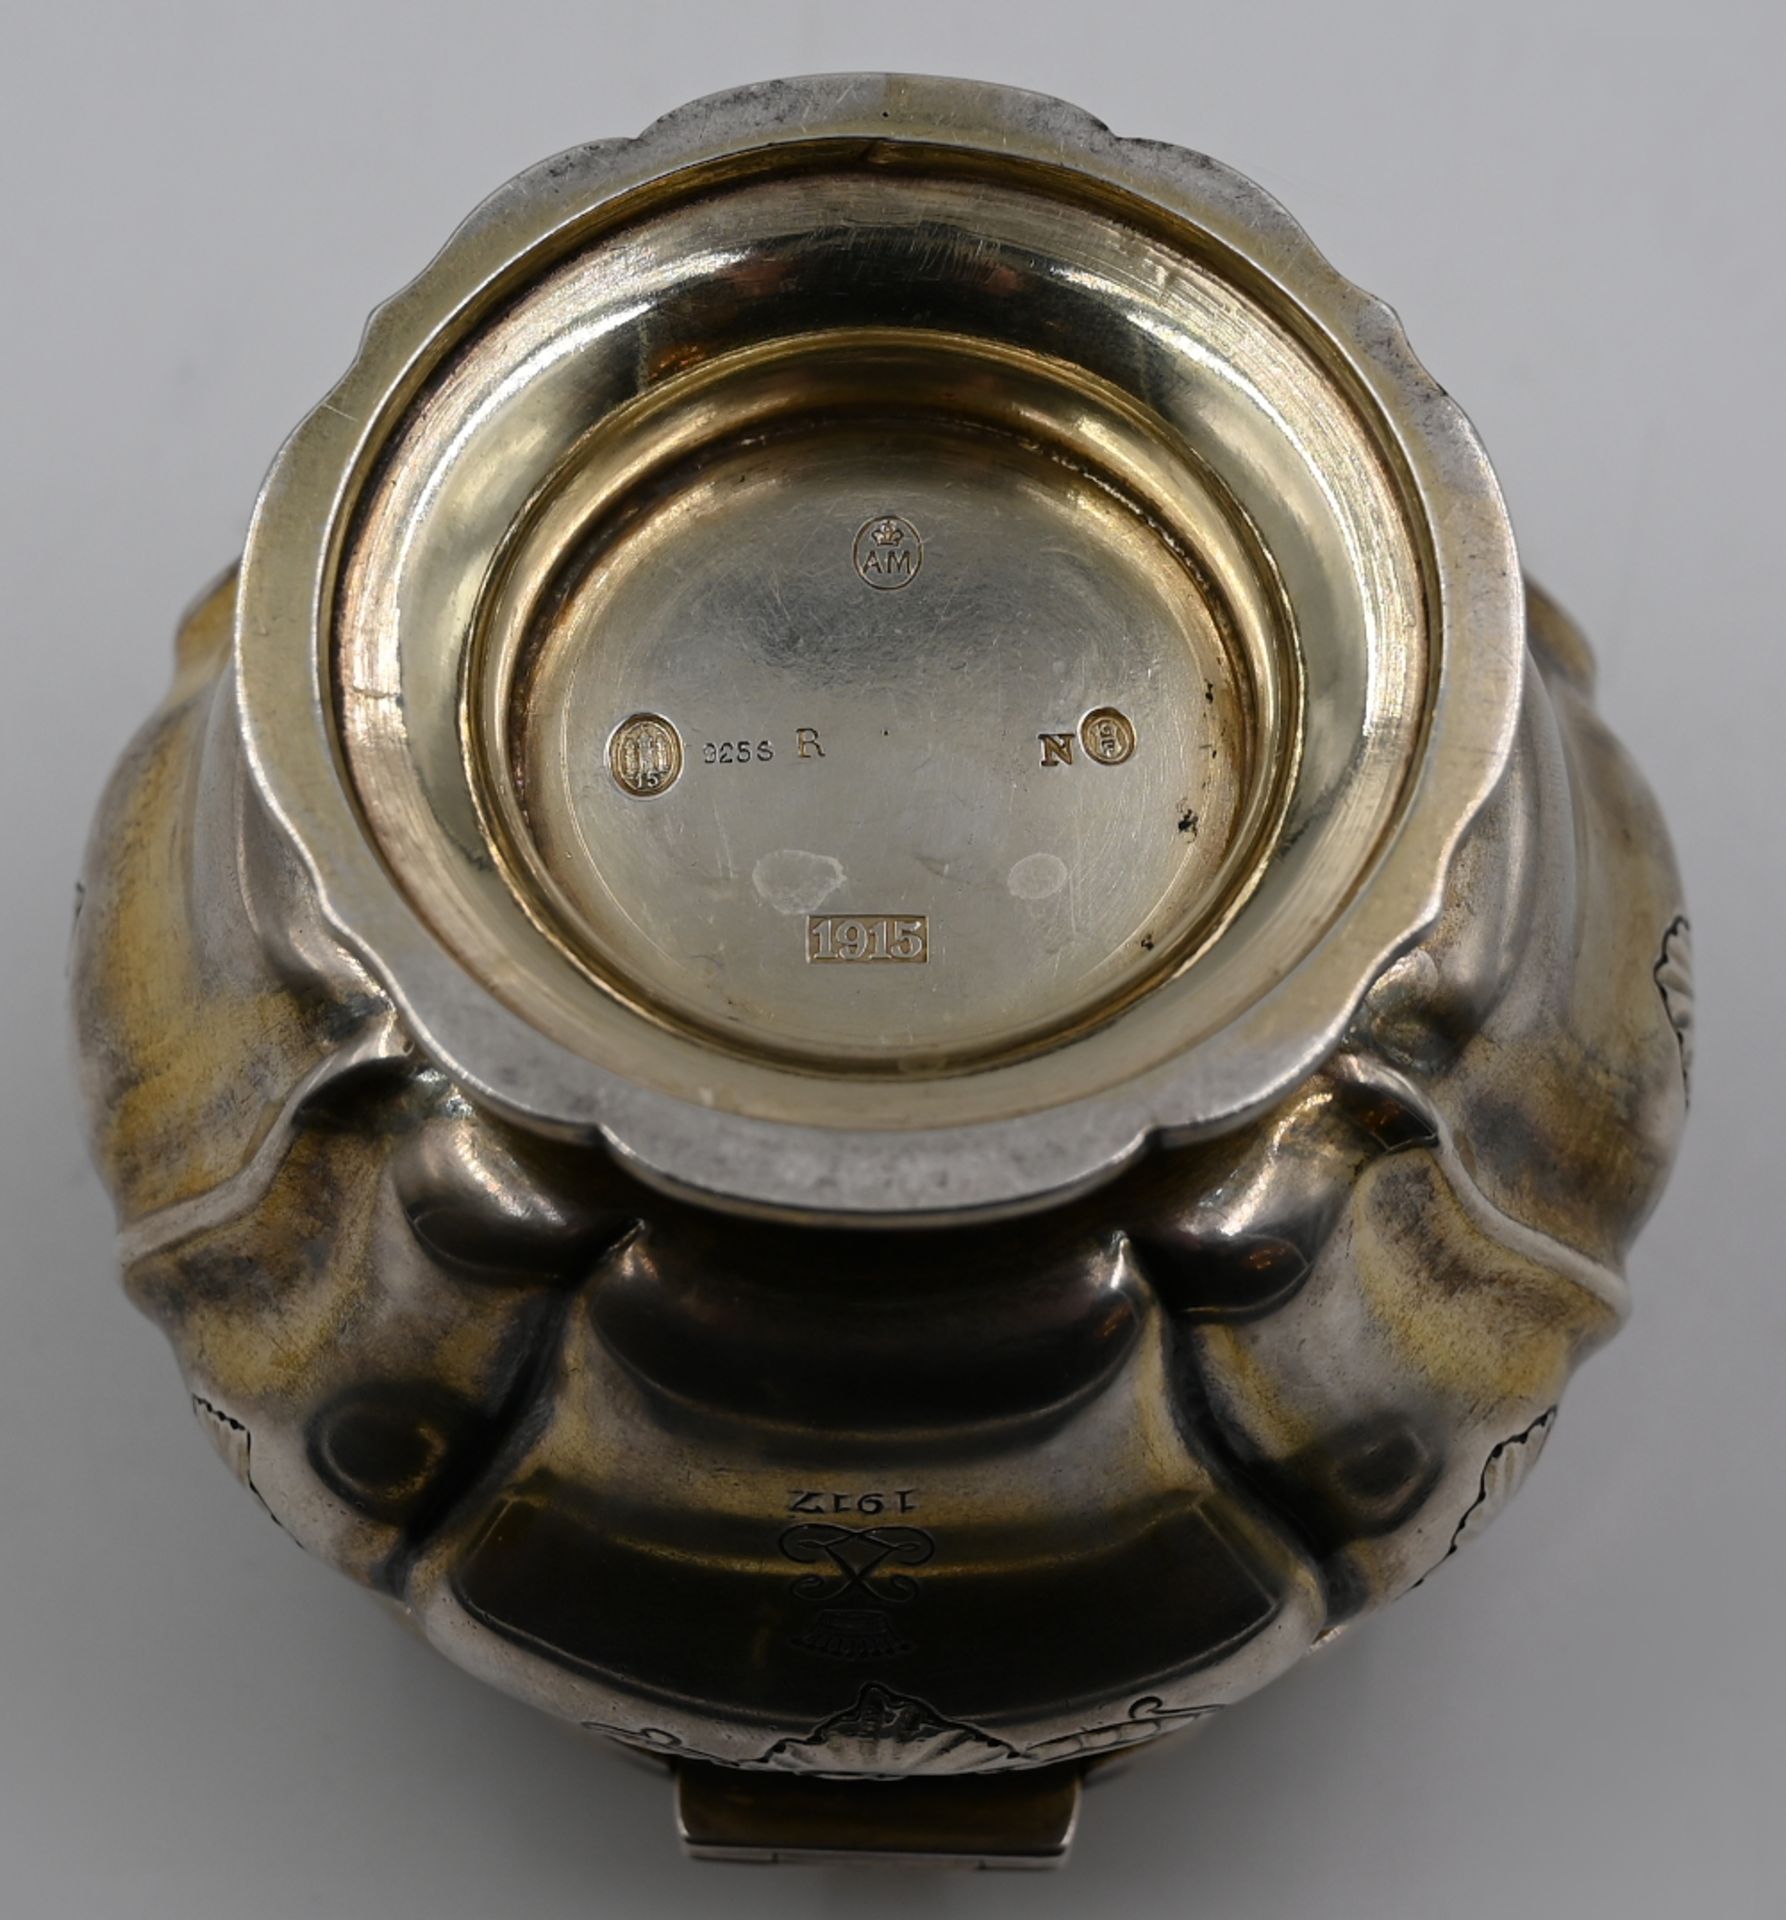 1 Deckeldöschen Silber 925 innen verg. Dänemark 1915, Meistermarke "AM" mit Krone im Oval (Anton MI - Image 2 of 2